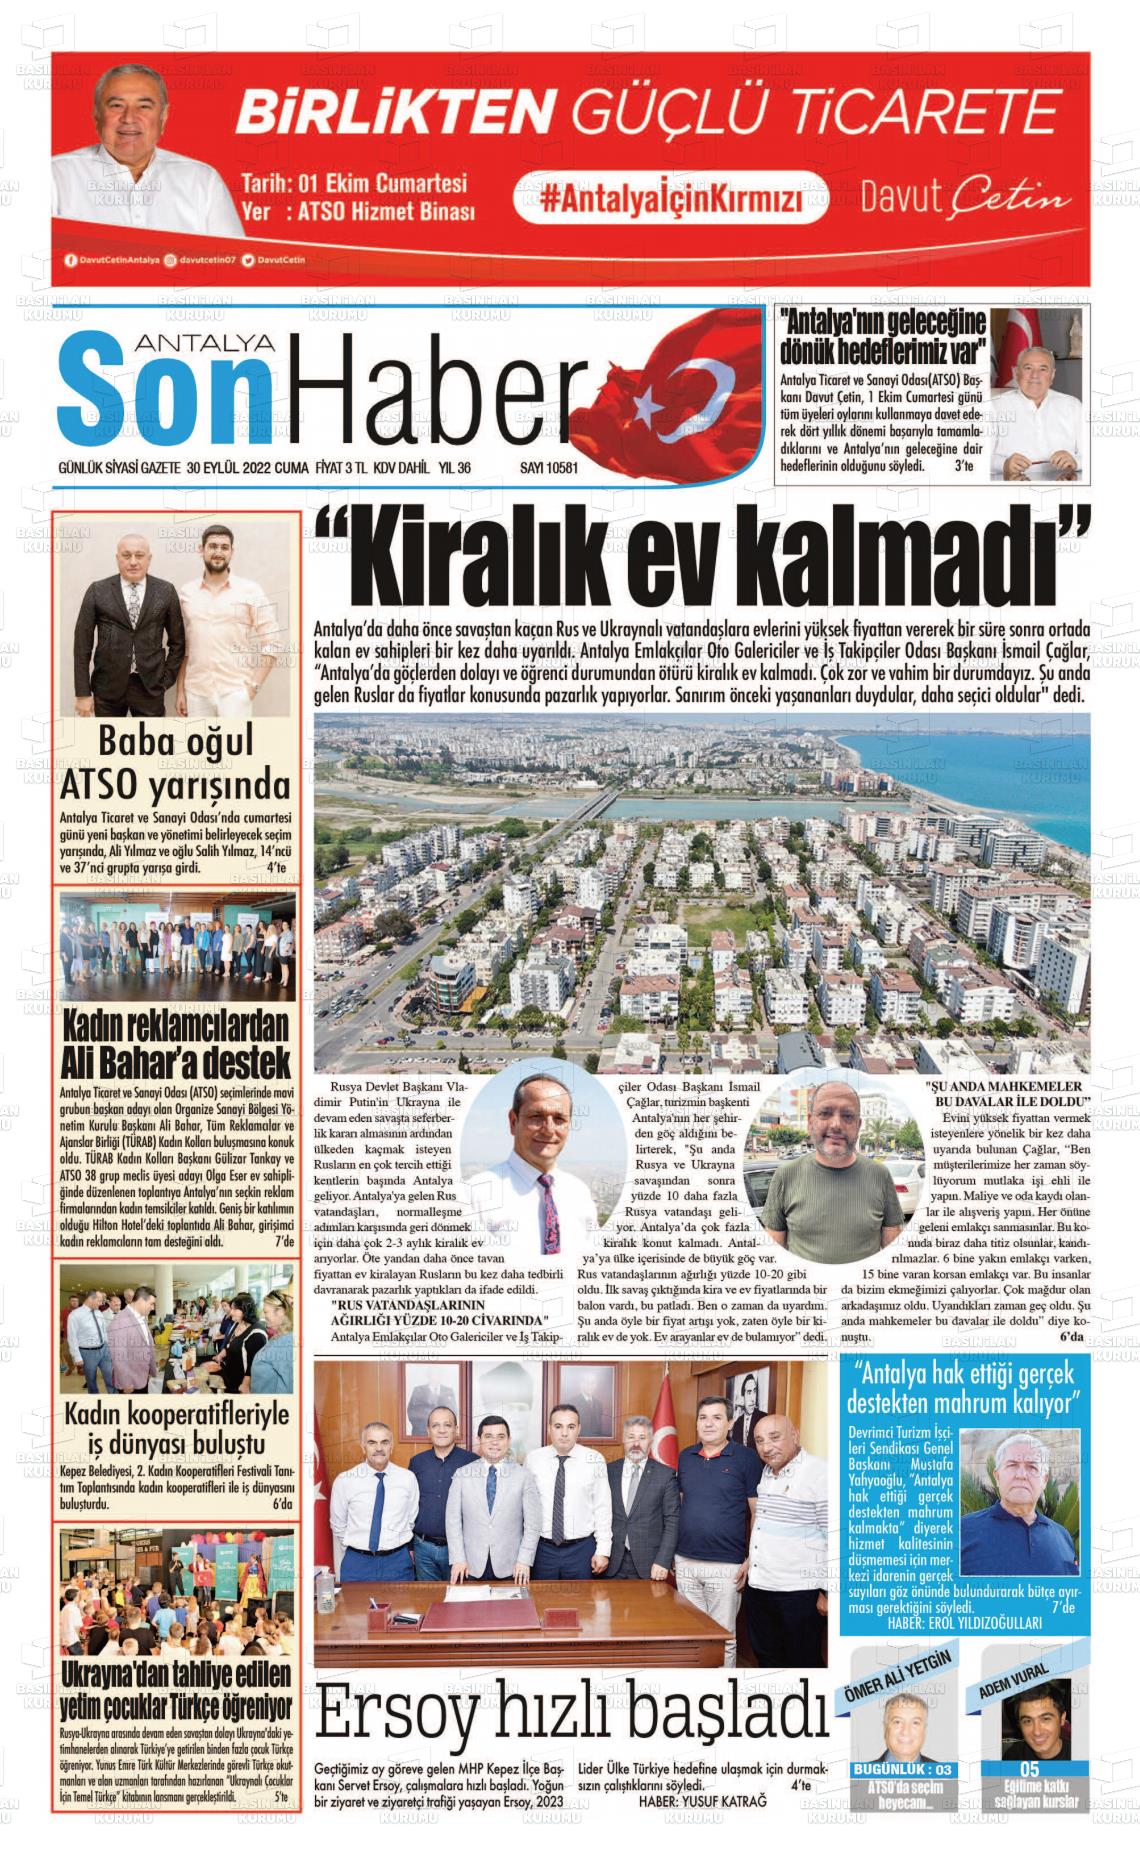 30 Eylül 2022 Antalya Son Haber Gazete Manşeti